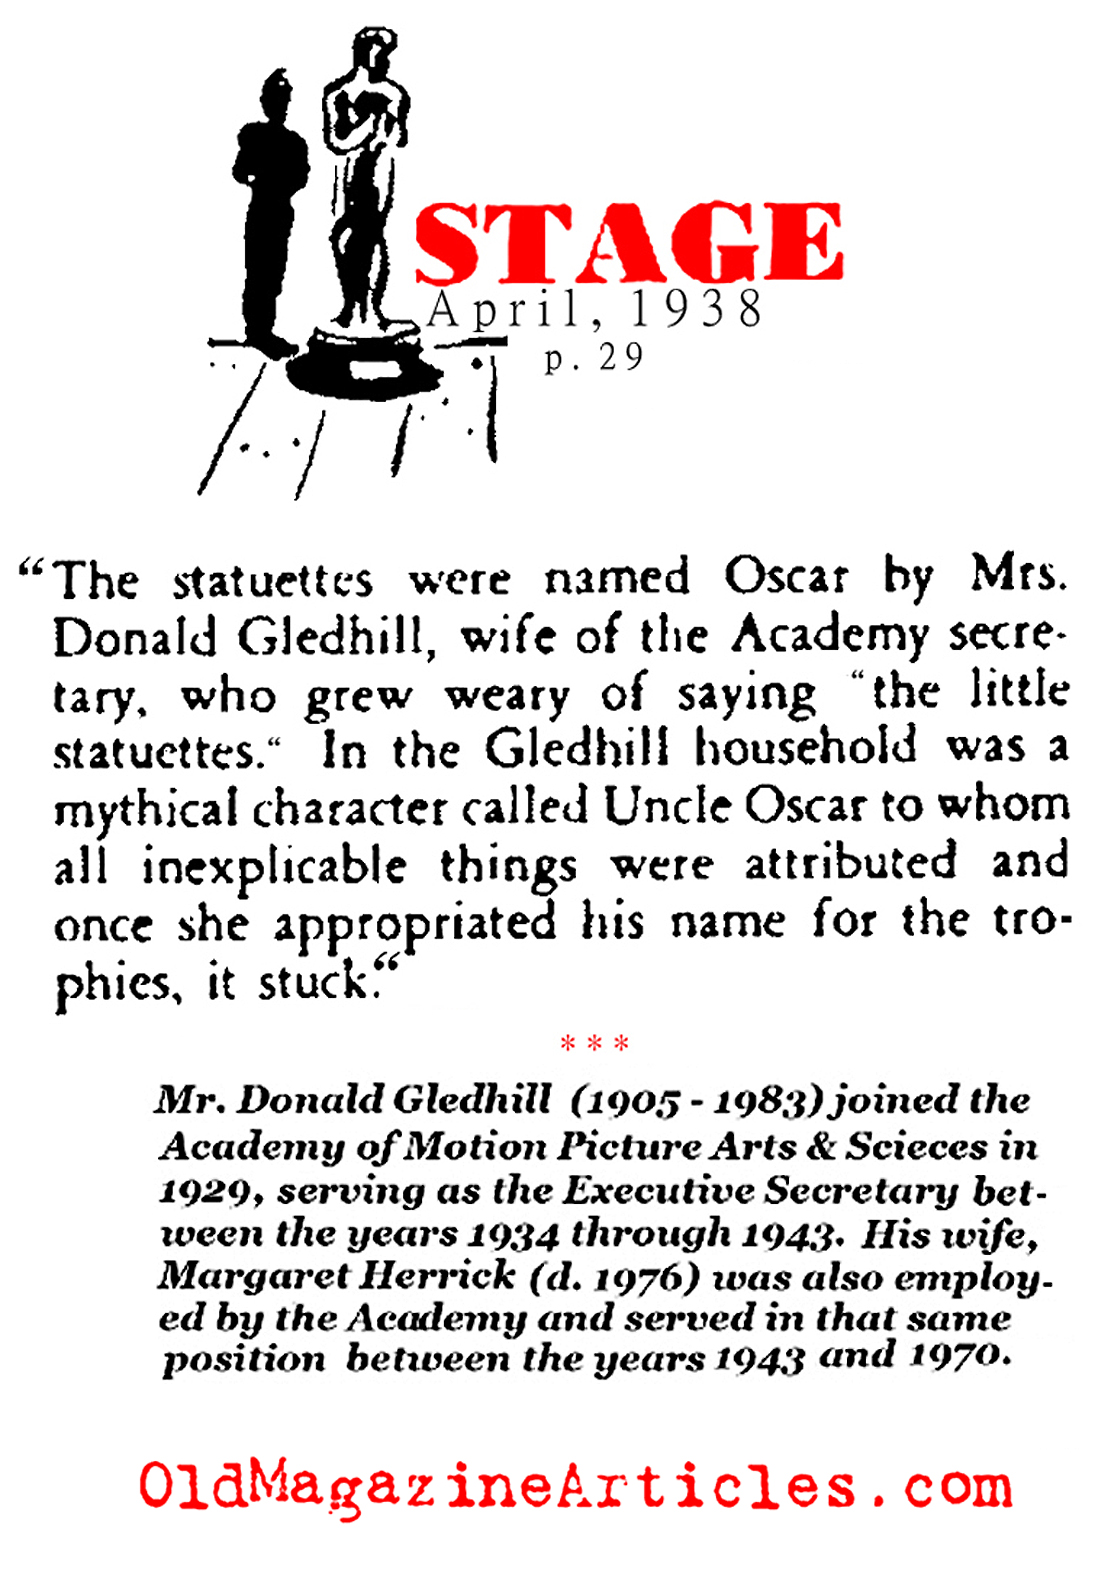 How the Academy Award Got Nicknamed 'Oscar' (Stage Magazine, 1938)